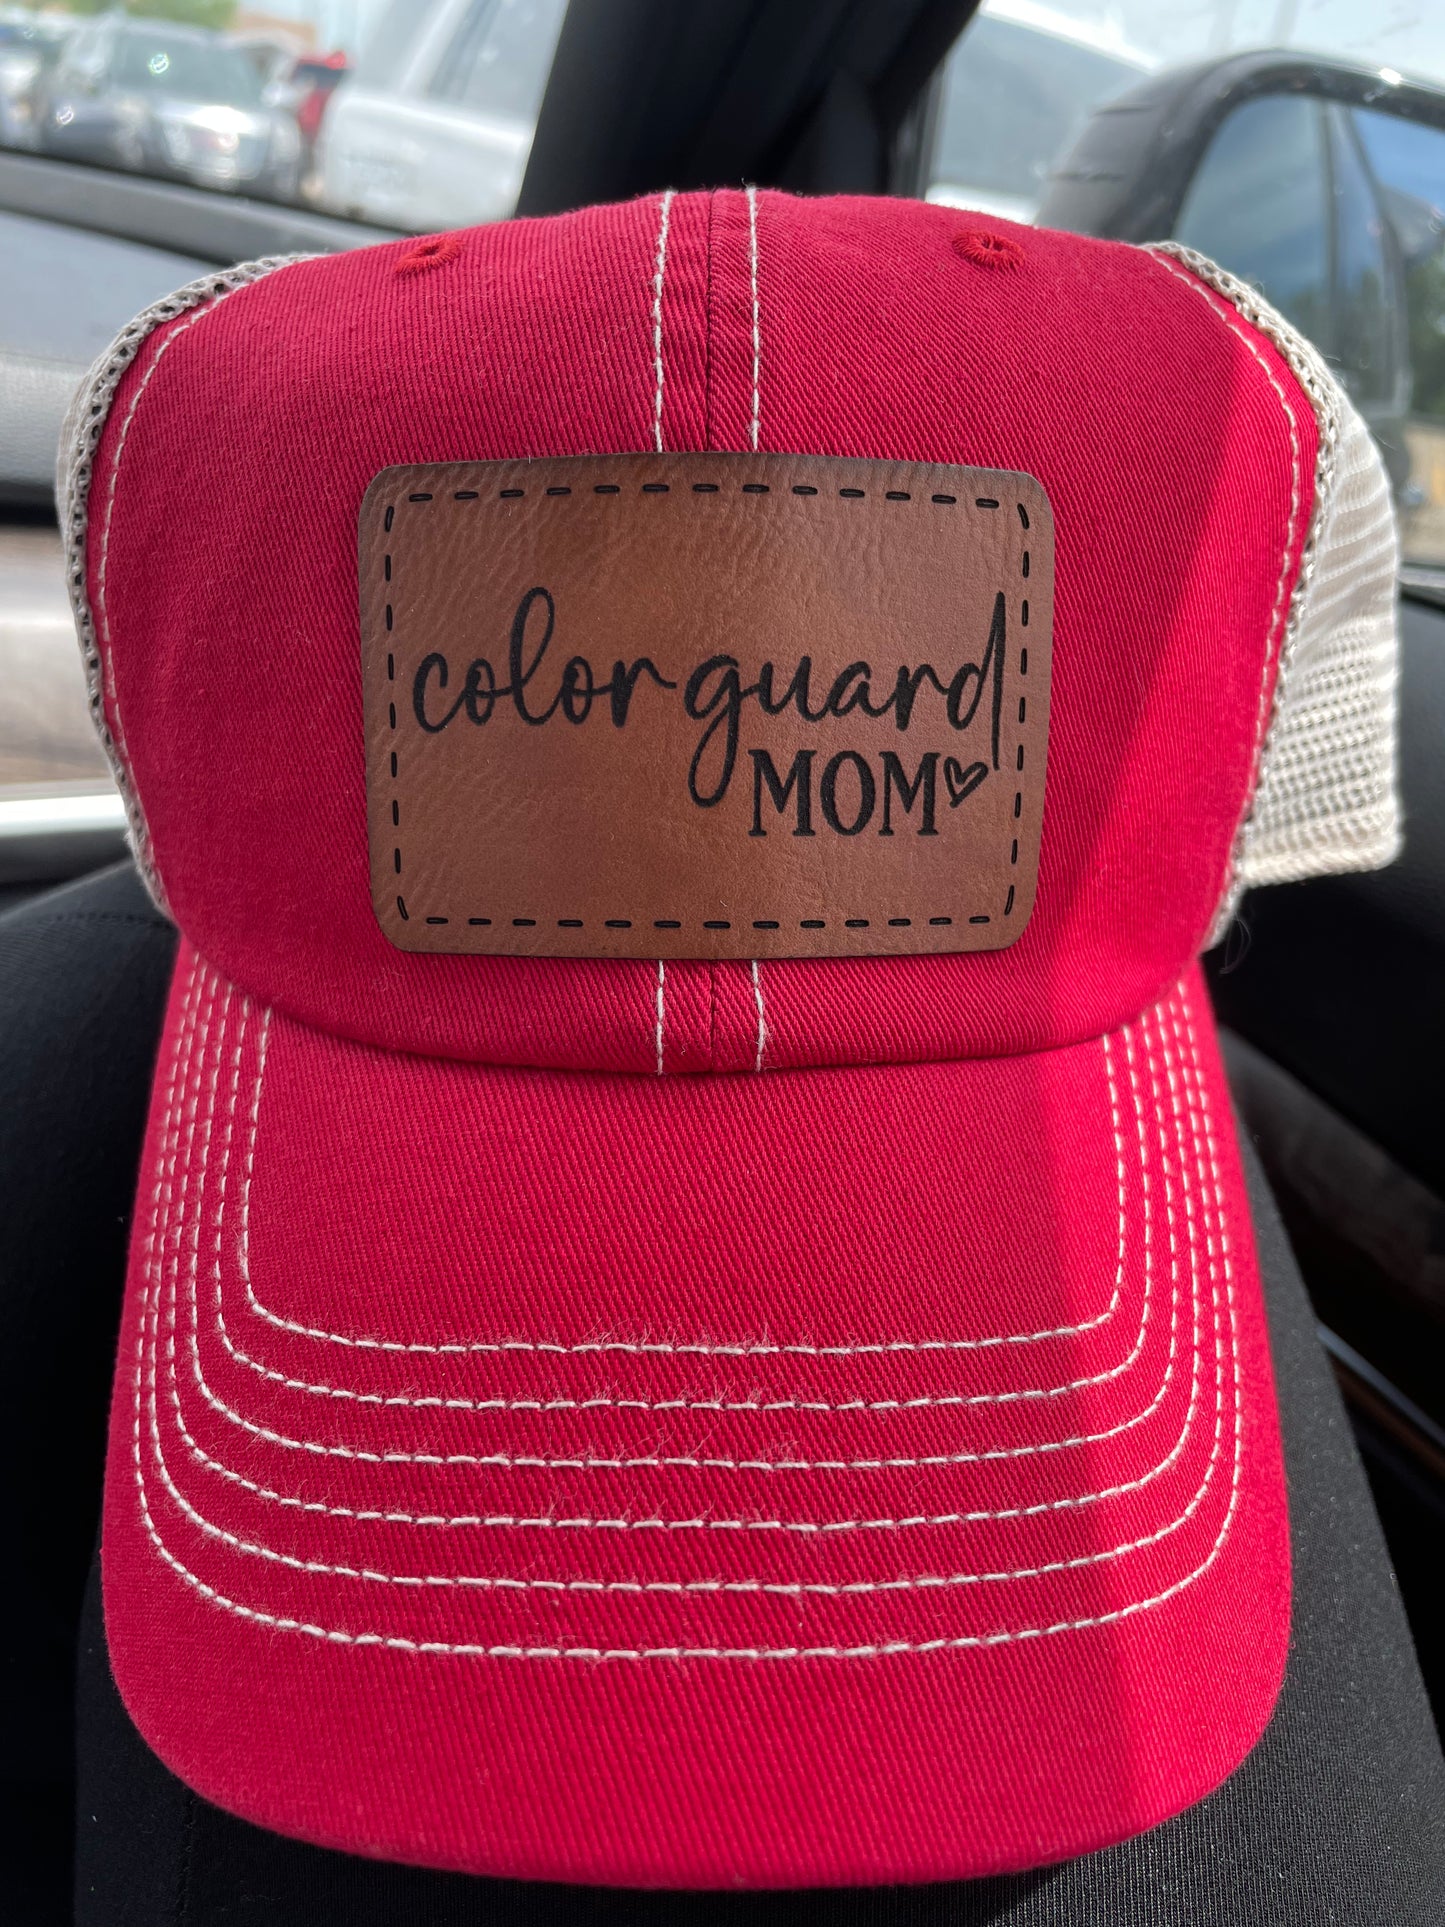 Colorguard Mom Hat